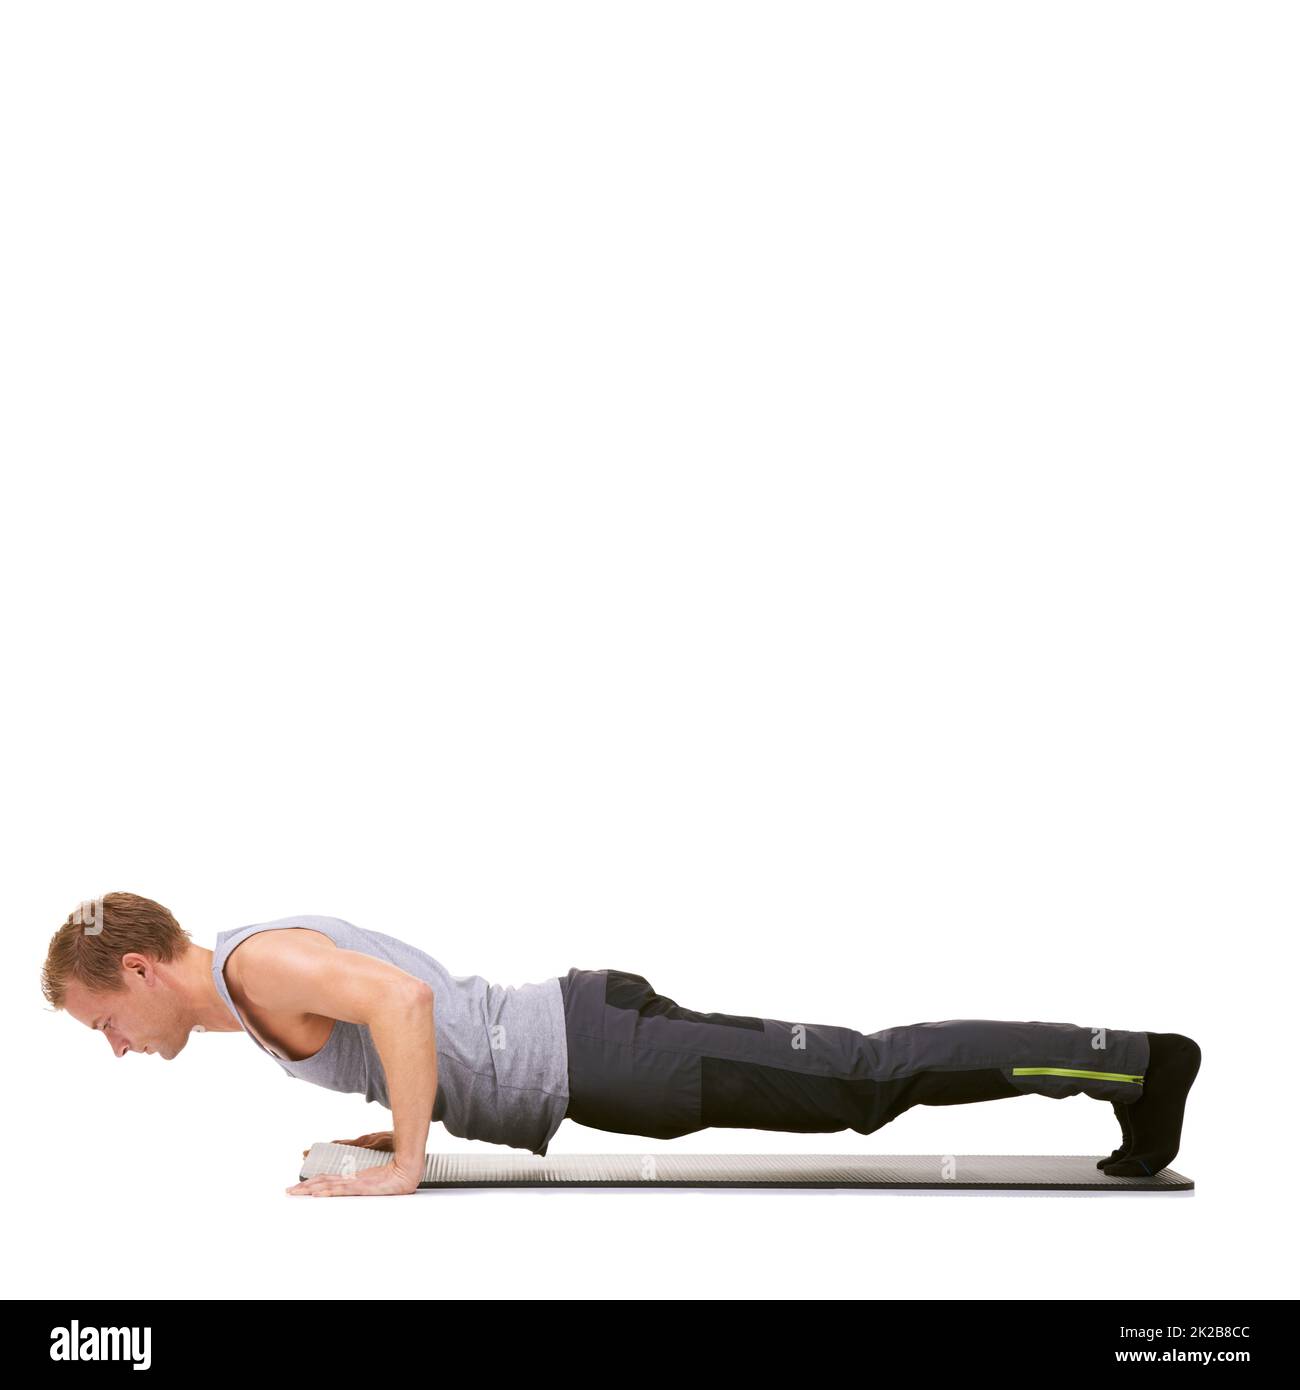 Déterminé à atteindre ses objectifs de forme physique. Un jeune homme en forme faisant des push-up sur son tapis d'exercice tout en étant isolé sur blanc. Banque D'Images